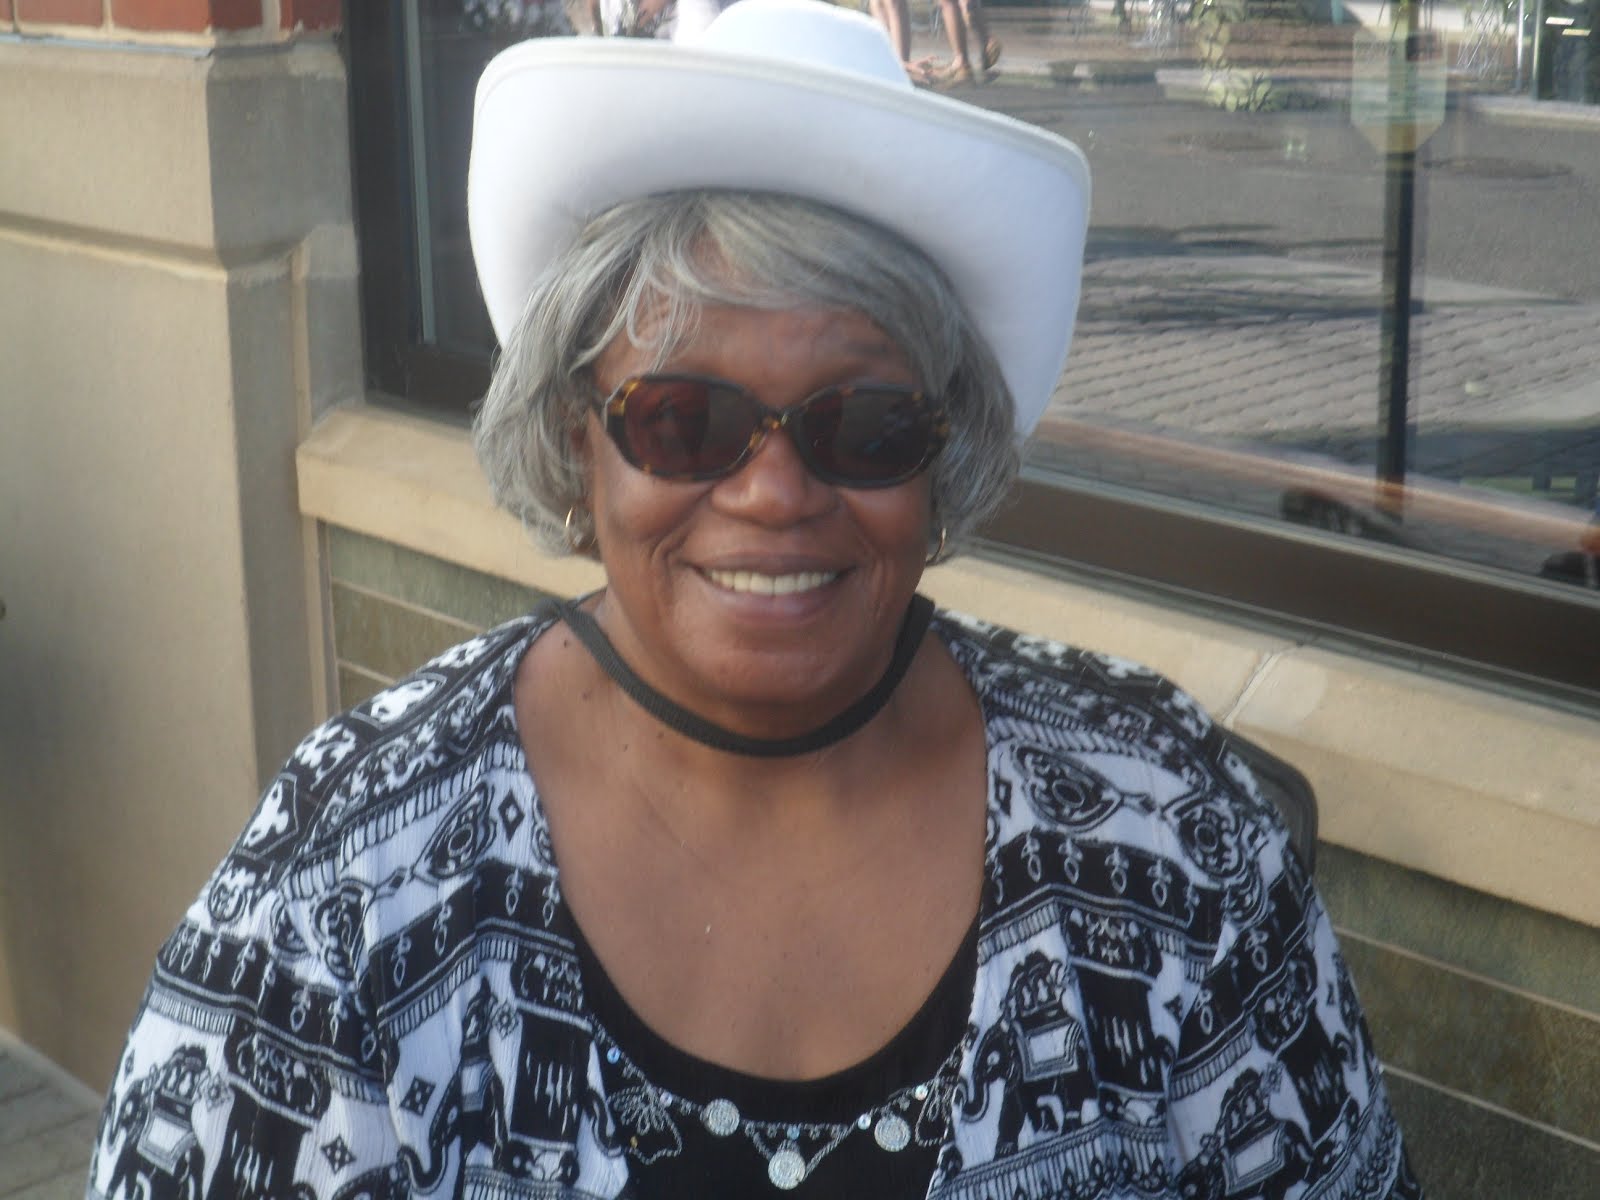 Malinda's White Cowboy Hat